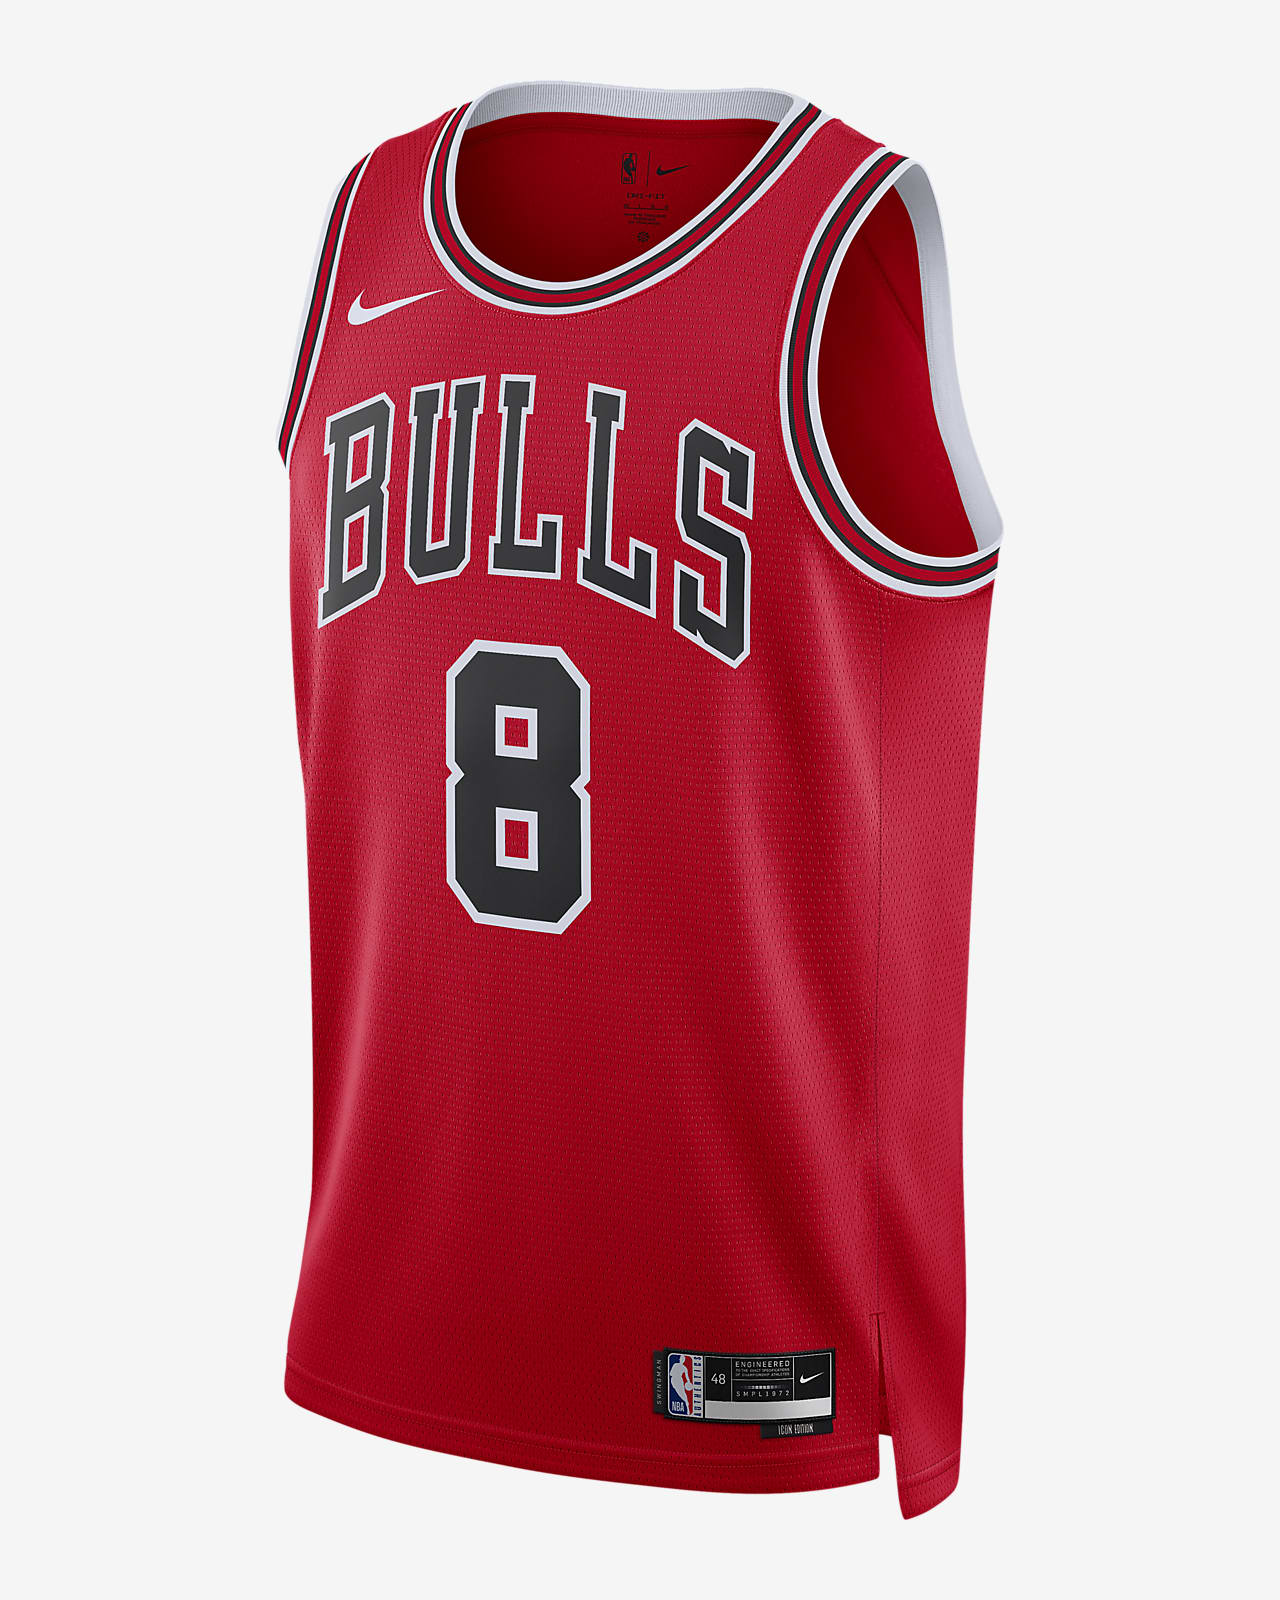 2022/23 赛季芝加哥公牛队 Icon Edition Nike Dri-FIT NBA Swingman Jersey 男子球衣